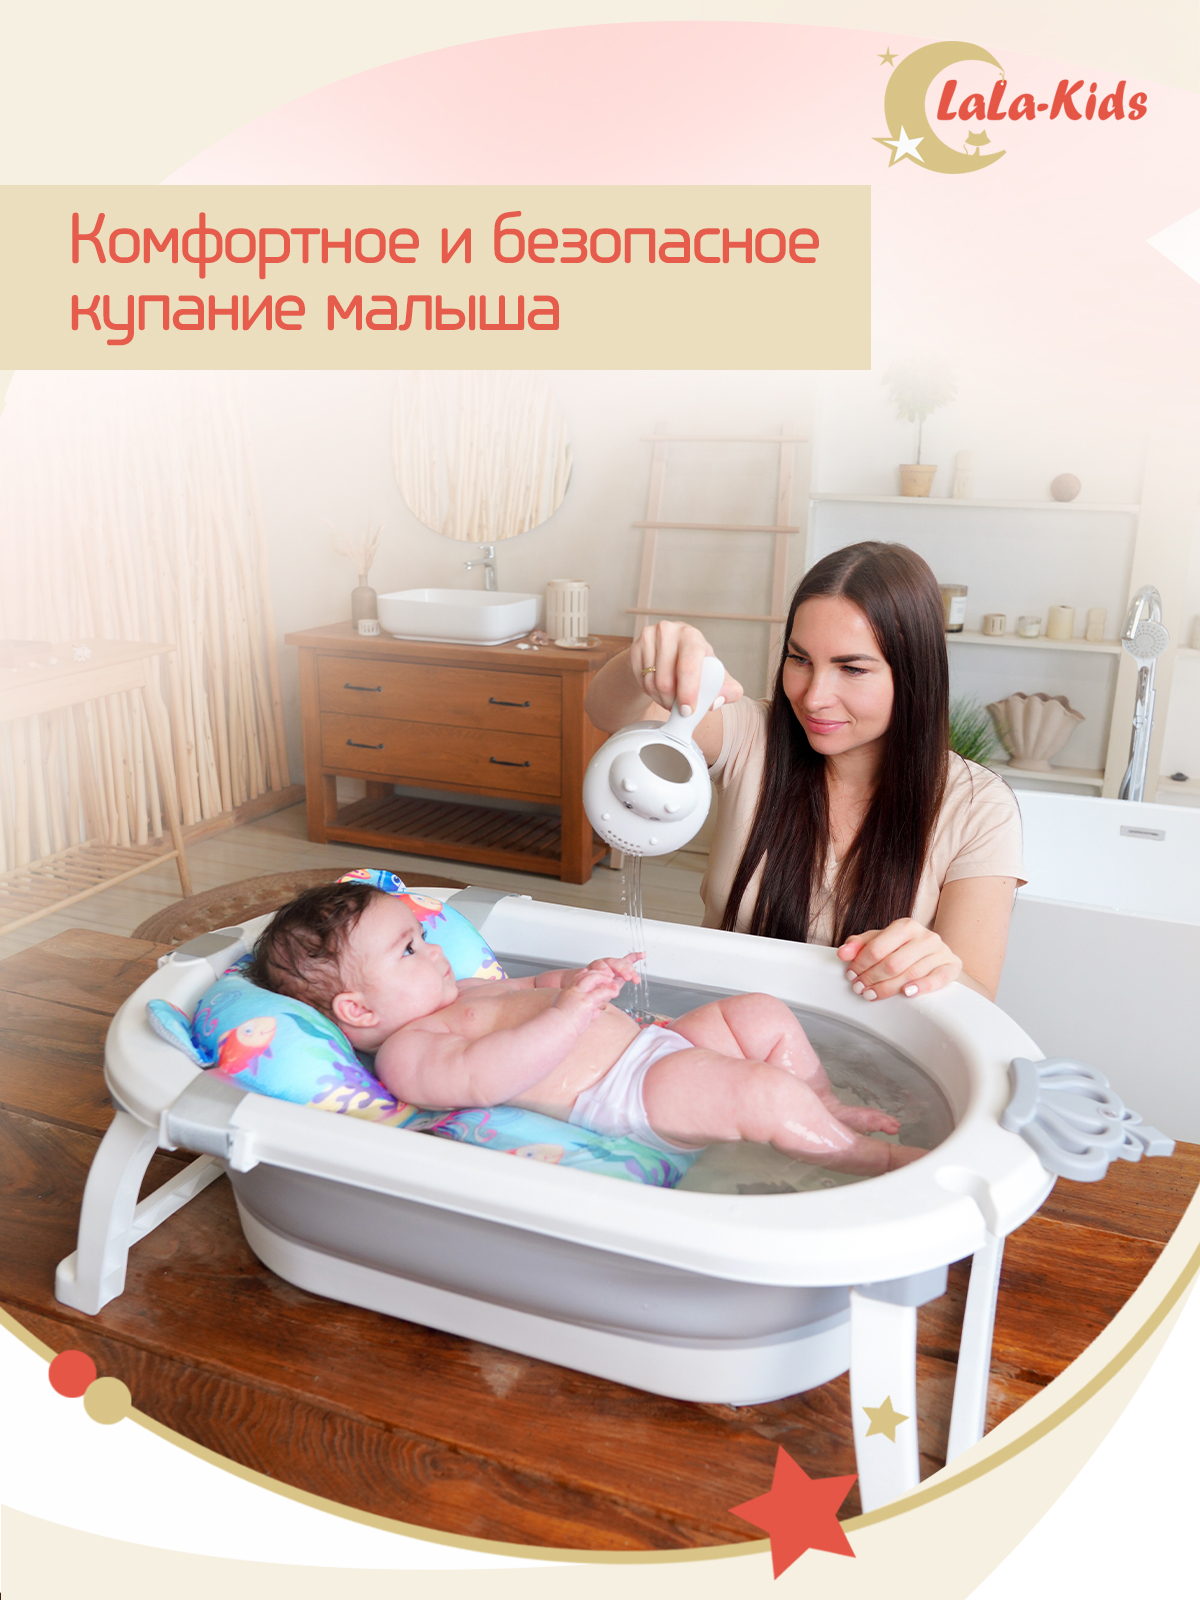 Детская ванночка с термометром LaLa-Kids складная с матрасиком для купания новорожденных - фото 3